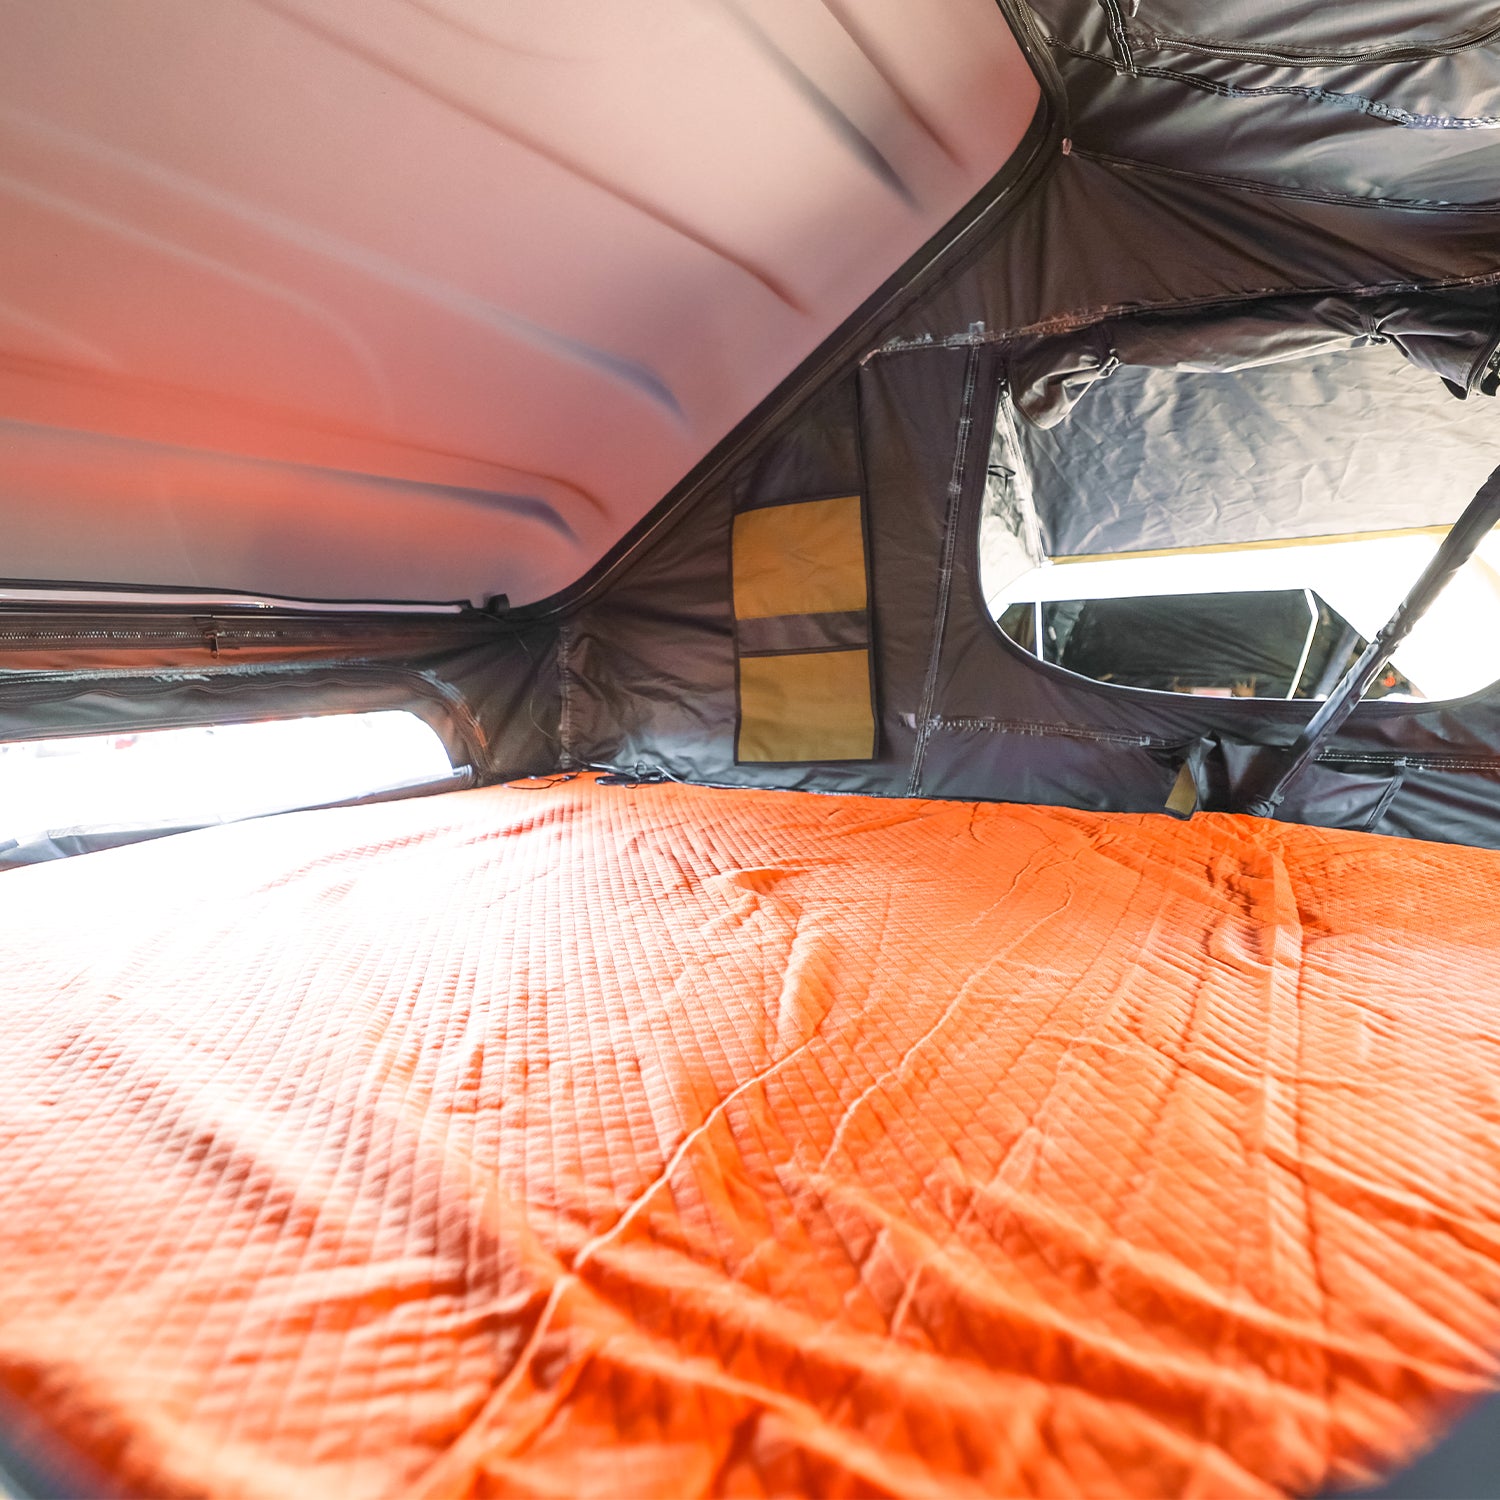 23zero-armadillo®-x2-hard-shell-roof-top-tent